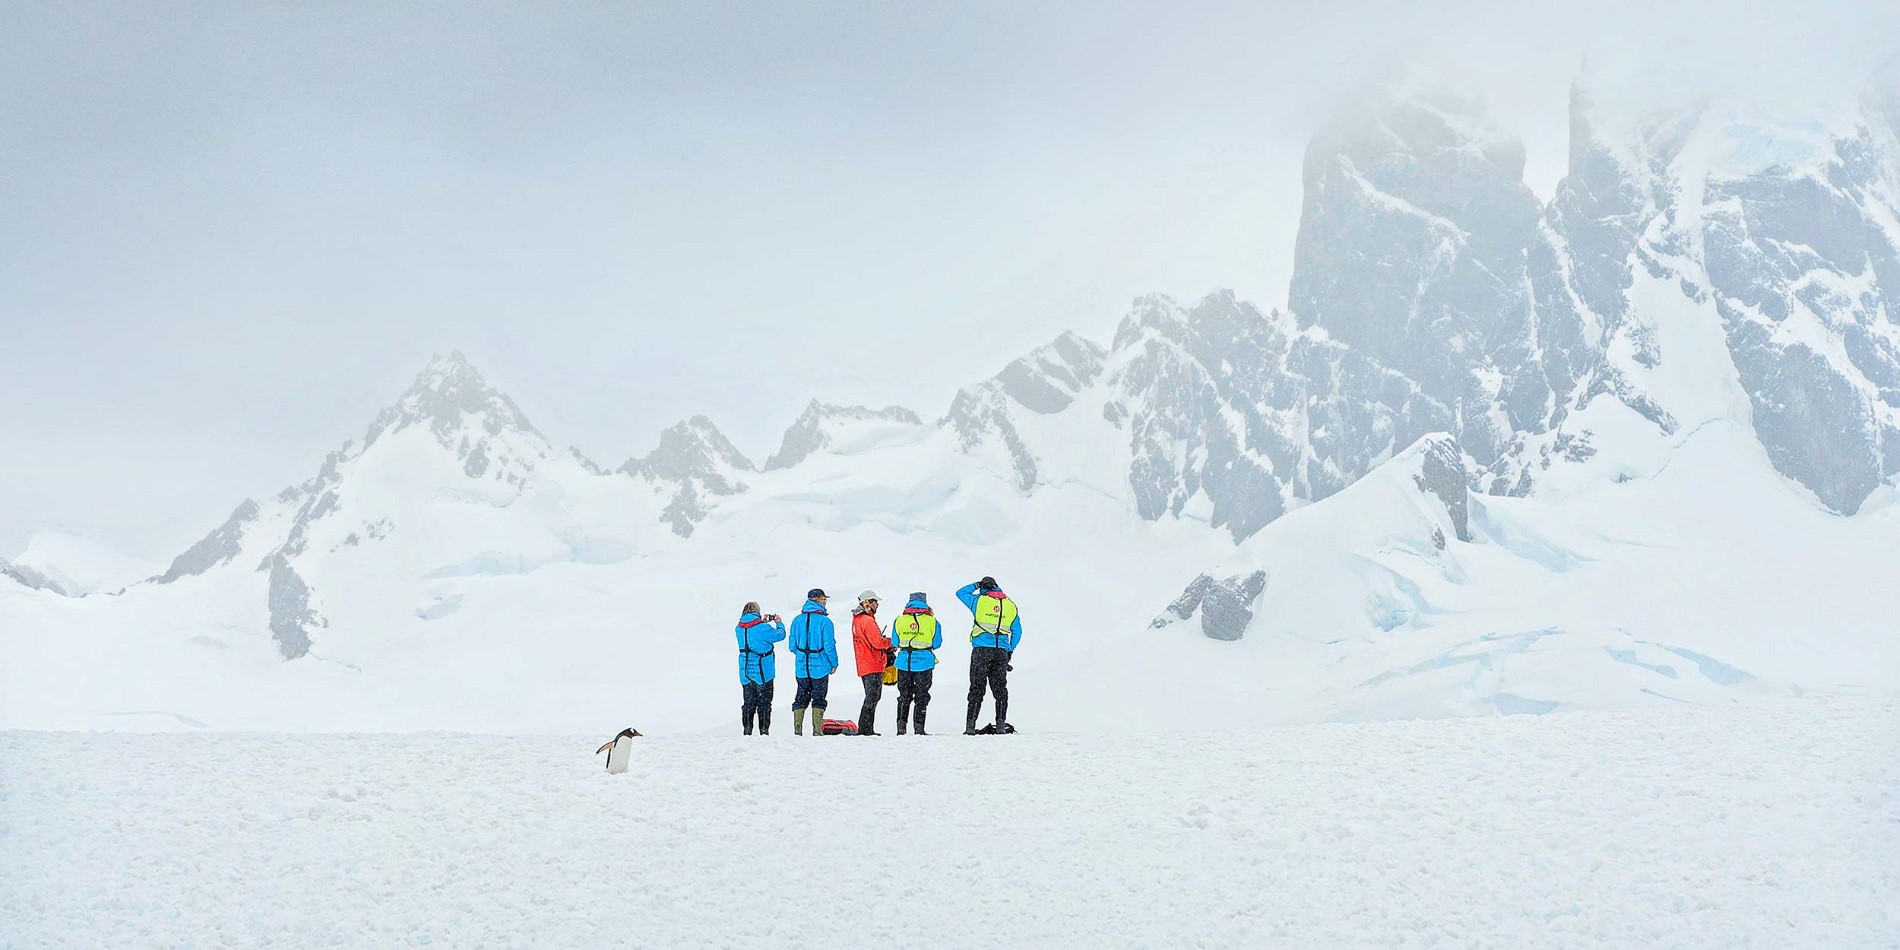 Un groupe de personnes conduisant des skis en bas d'une montagne couverte de neige